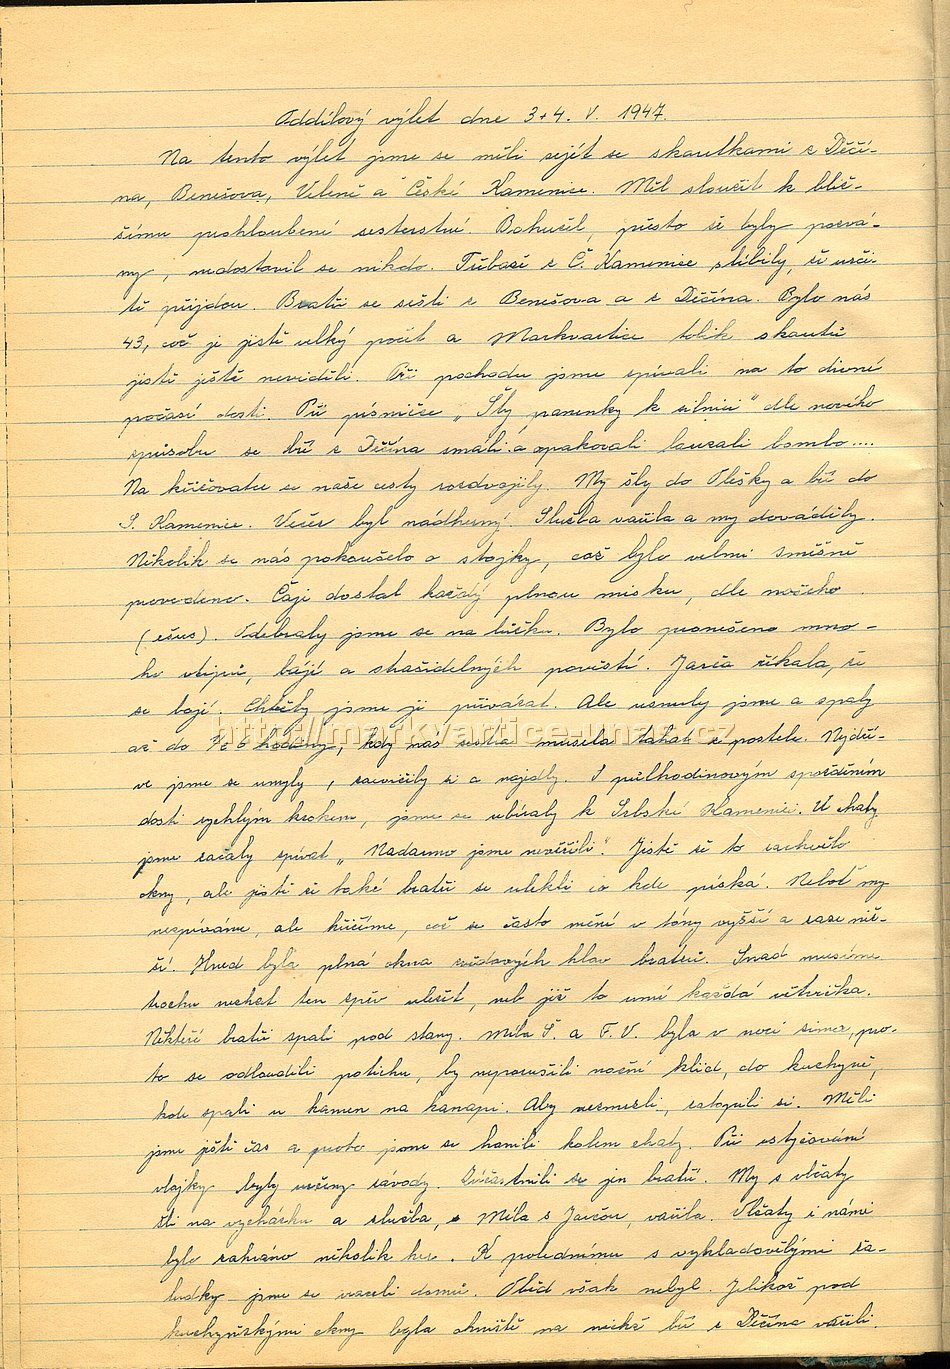 Oddlov vlet 3.-4.5.1947
